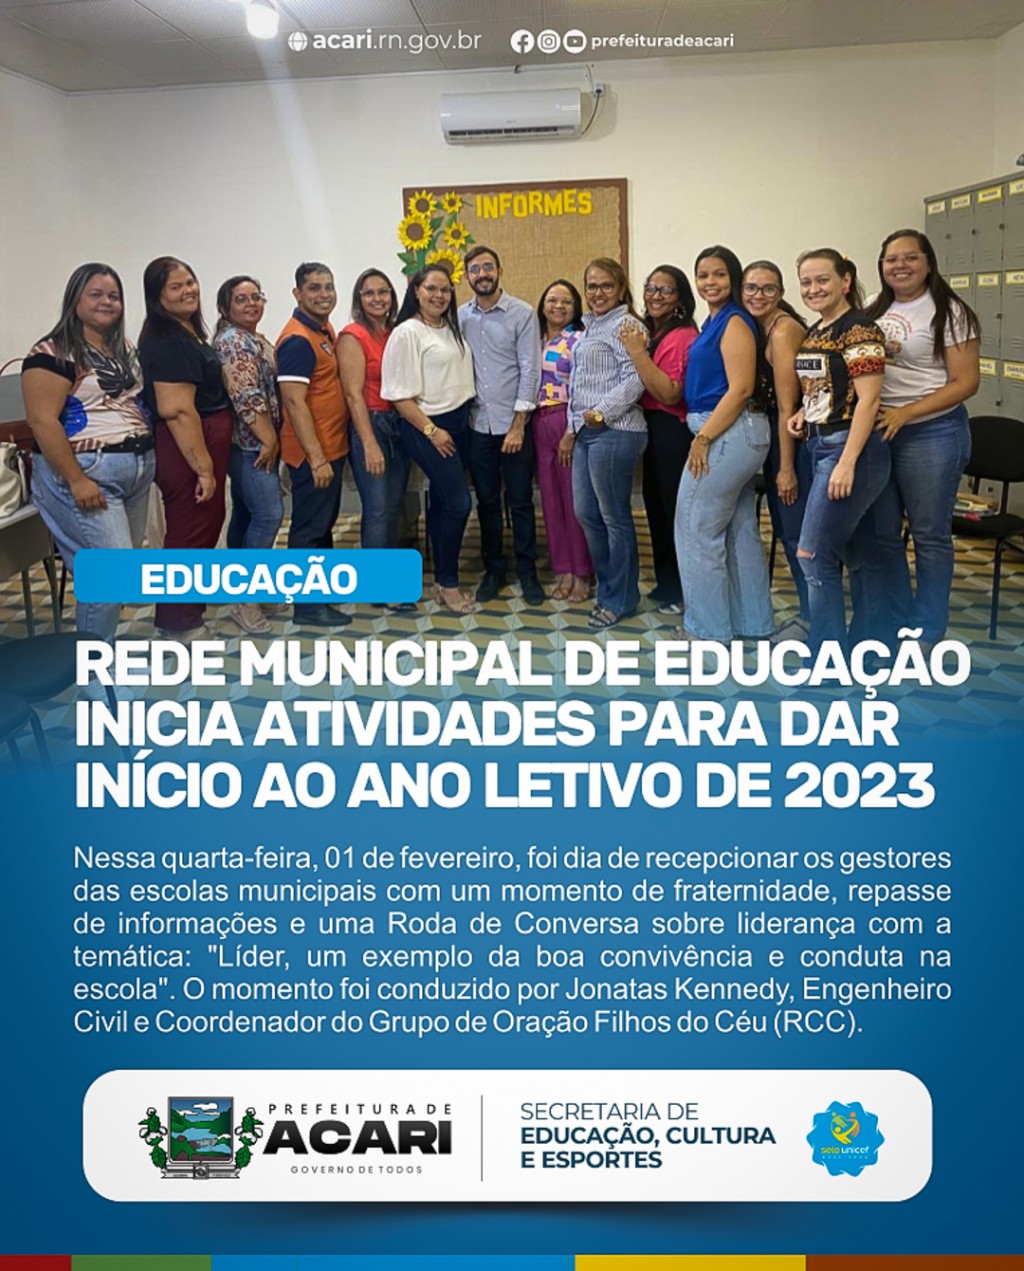 REDE MUNICIPAL DE EDUCAÇÃO INICIA ATIVIDADES PARA O ANO LETIVO 2023